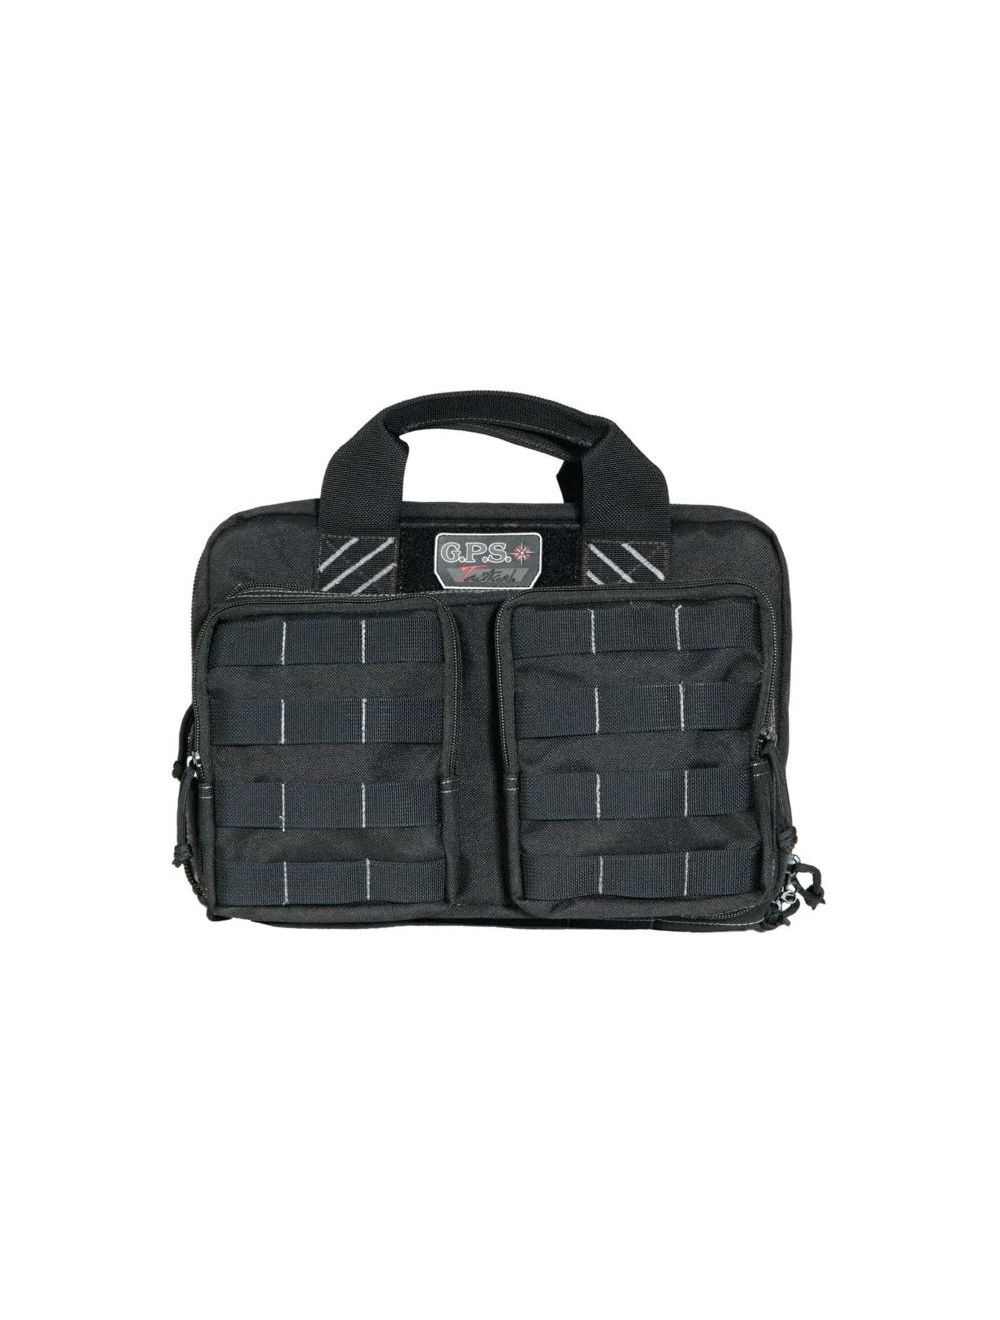 Tactical Quad + 2 Pistol Range Bag